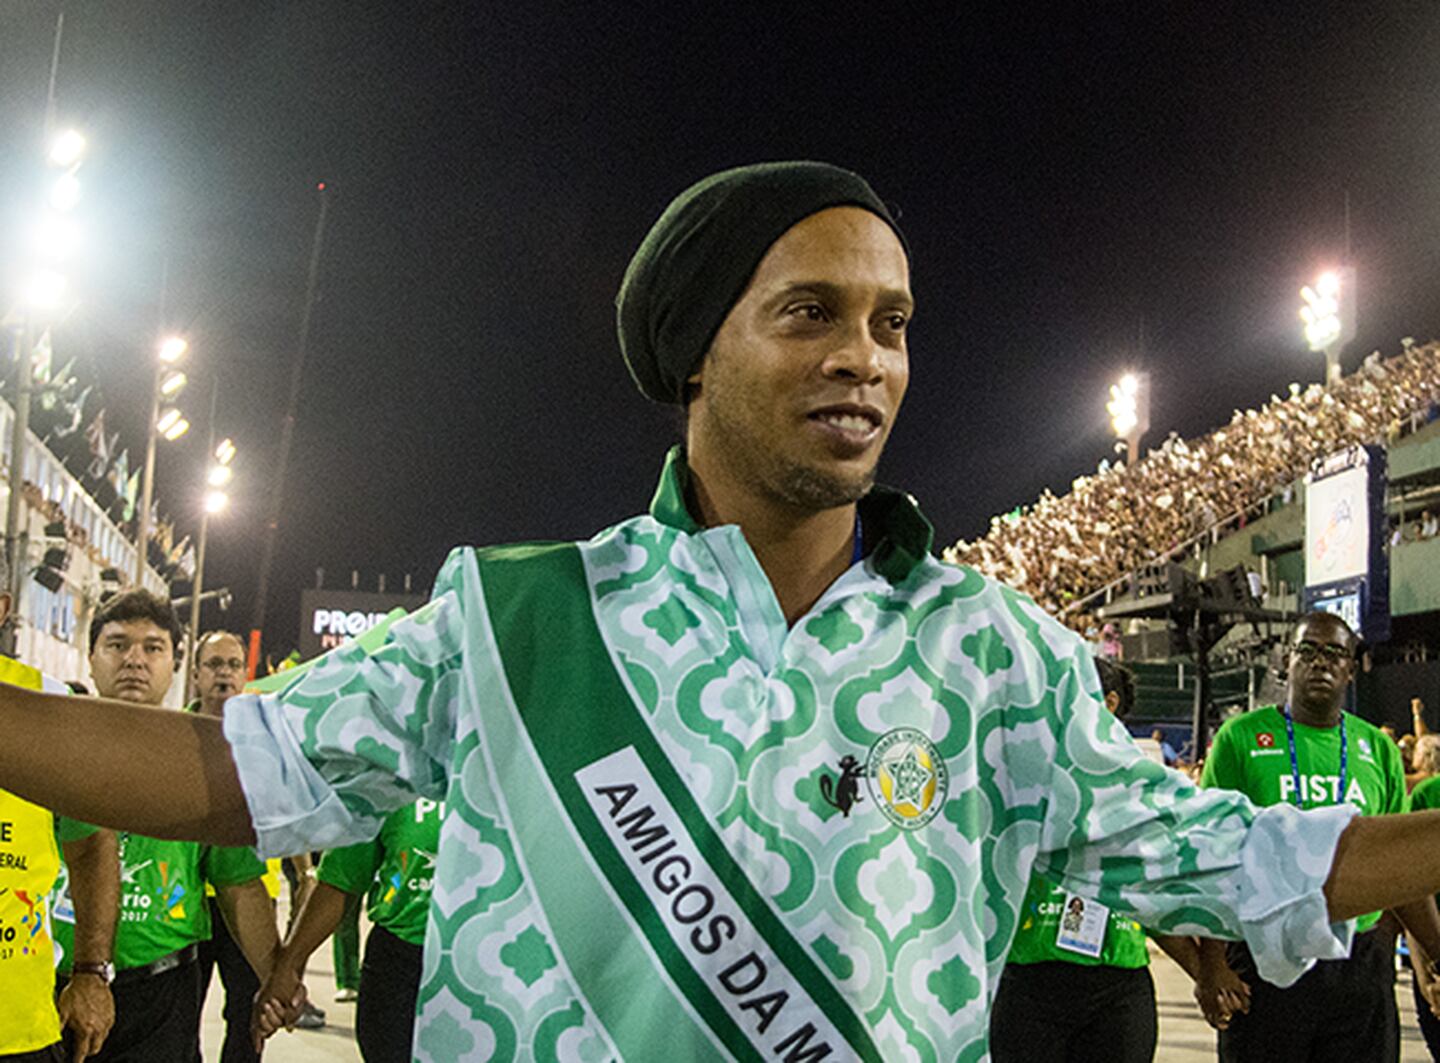 El premio de colaborar: Vivir un día con Ronaldinho